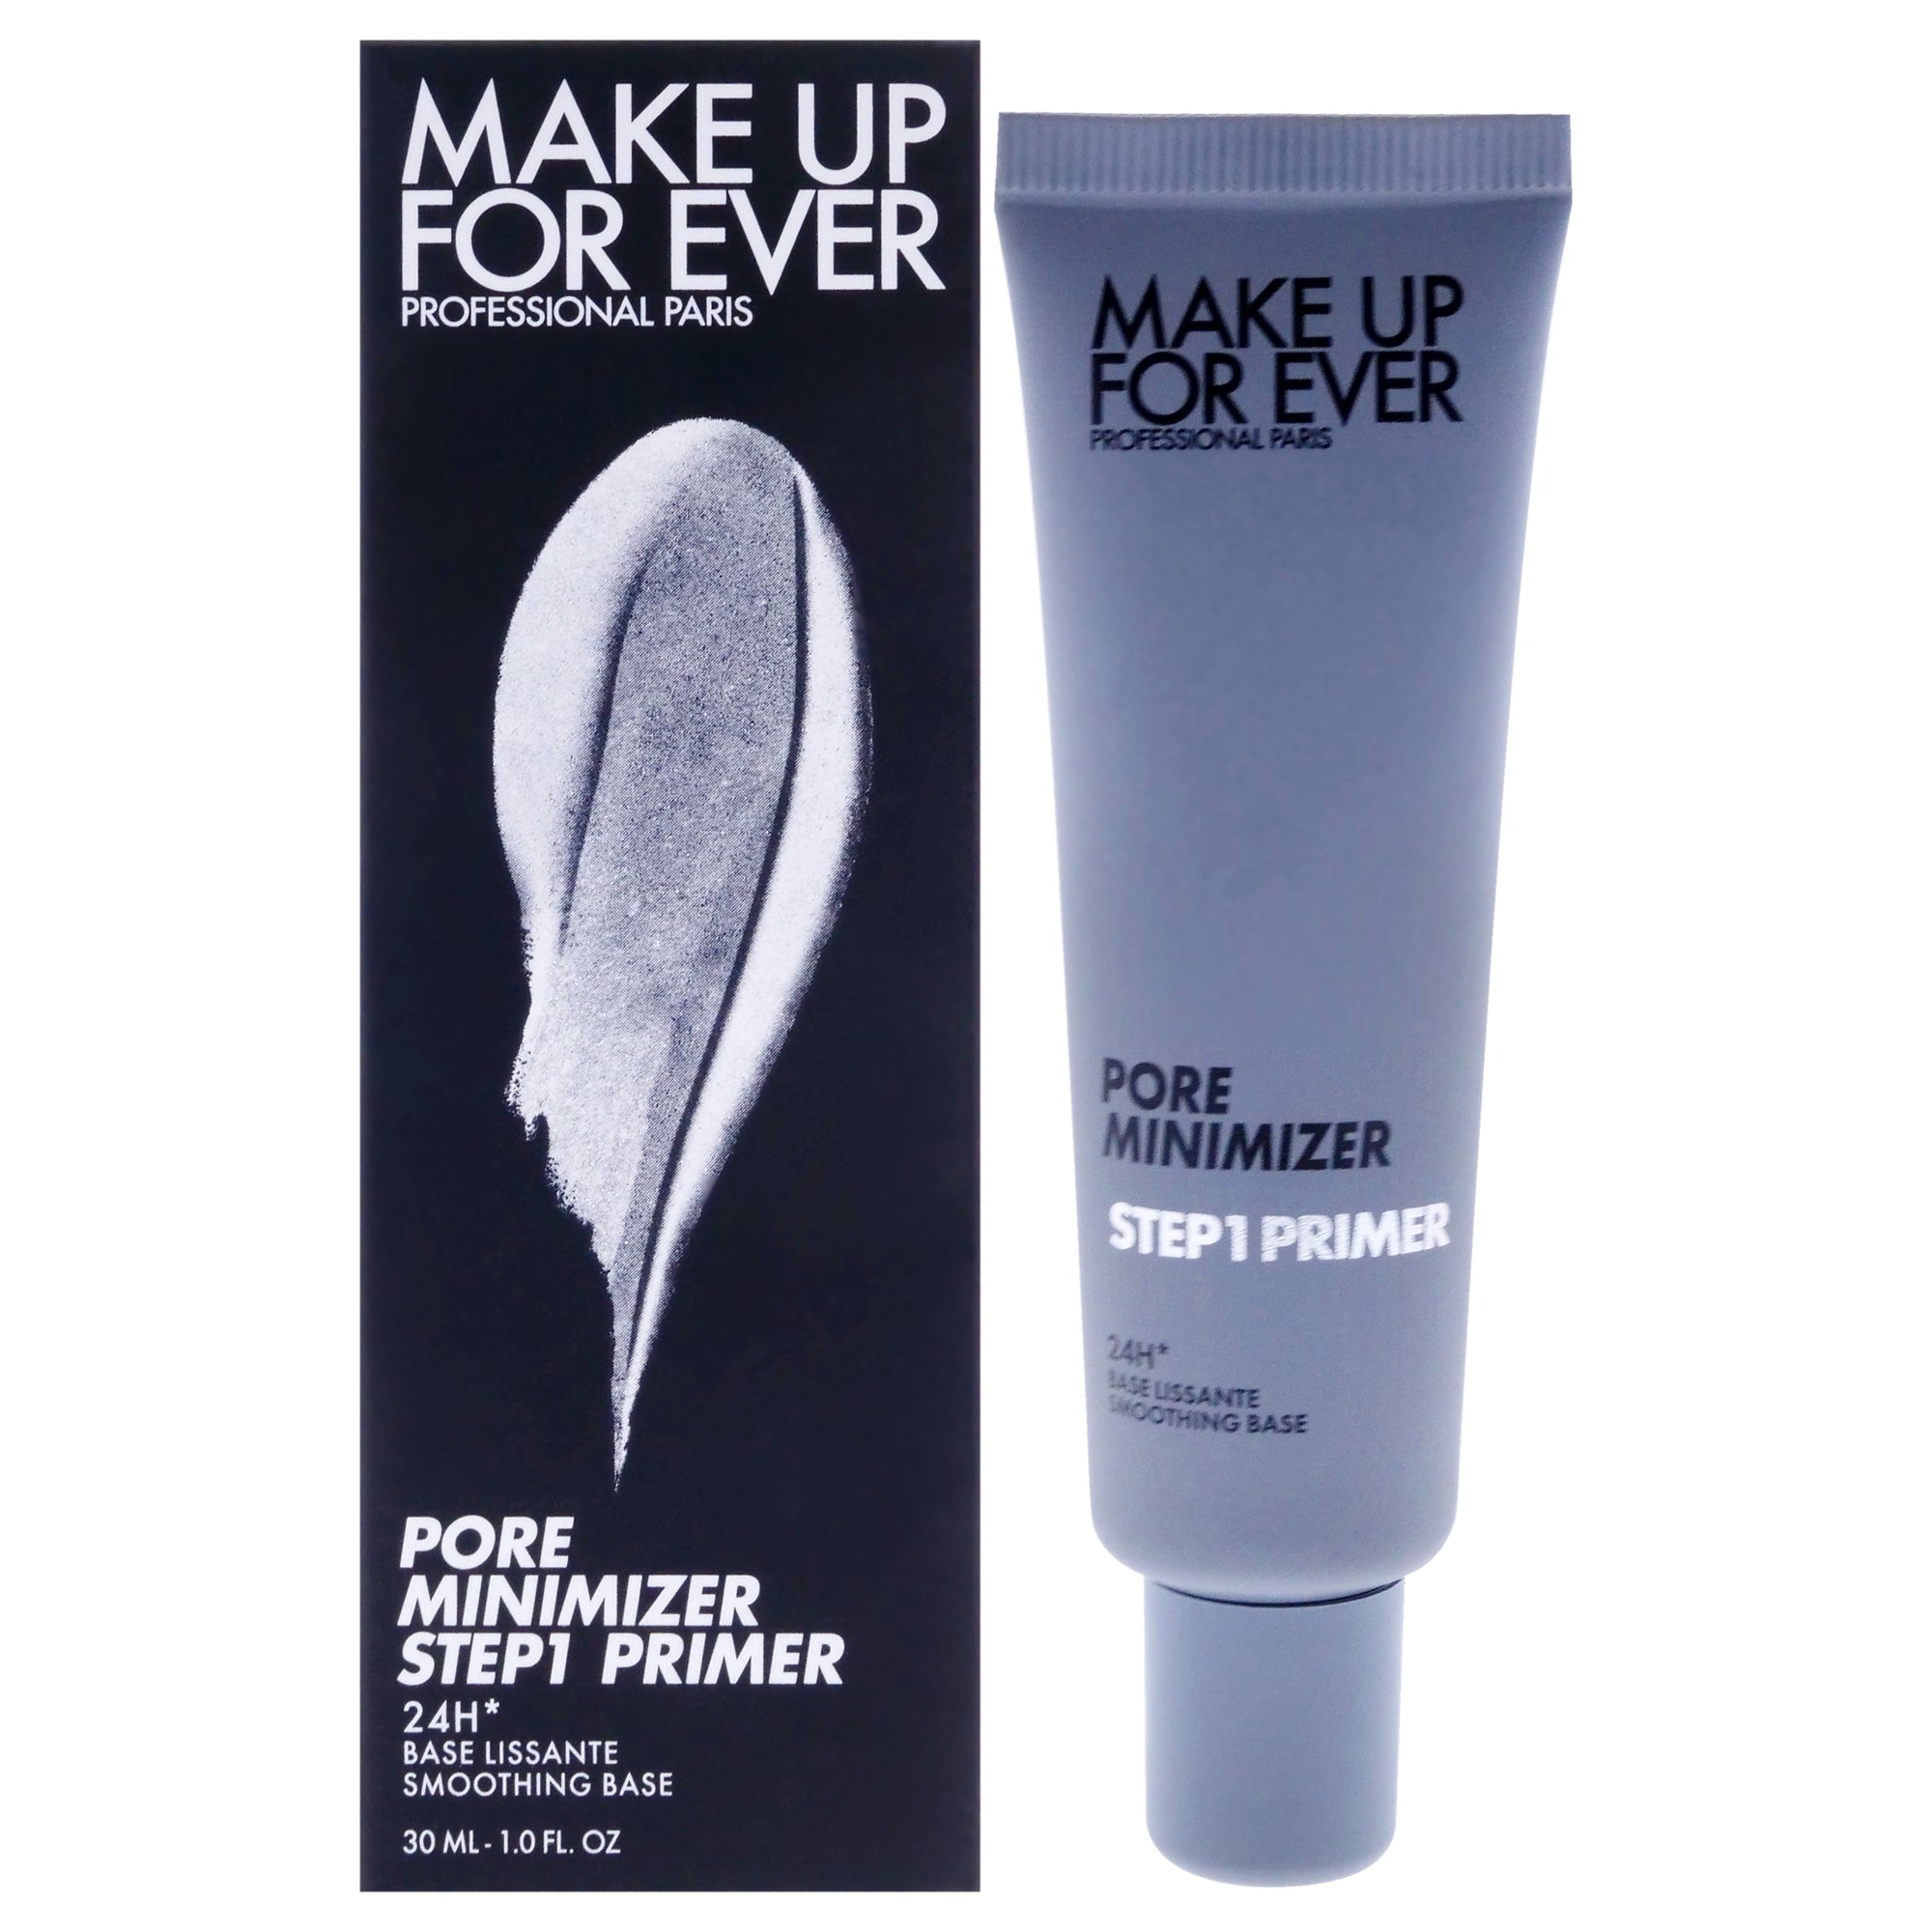 Step 1 Primer Color Corrector - Pore Minimizer by Make Up For Ever for Women - 1 oz Primer